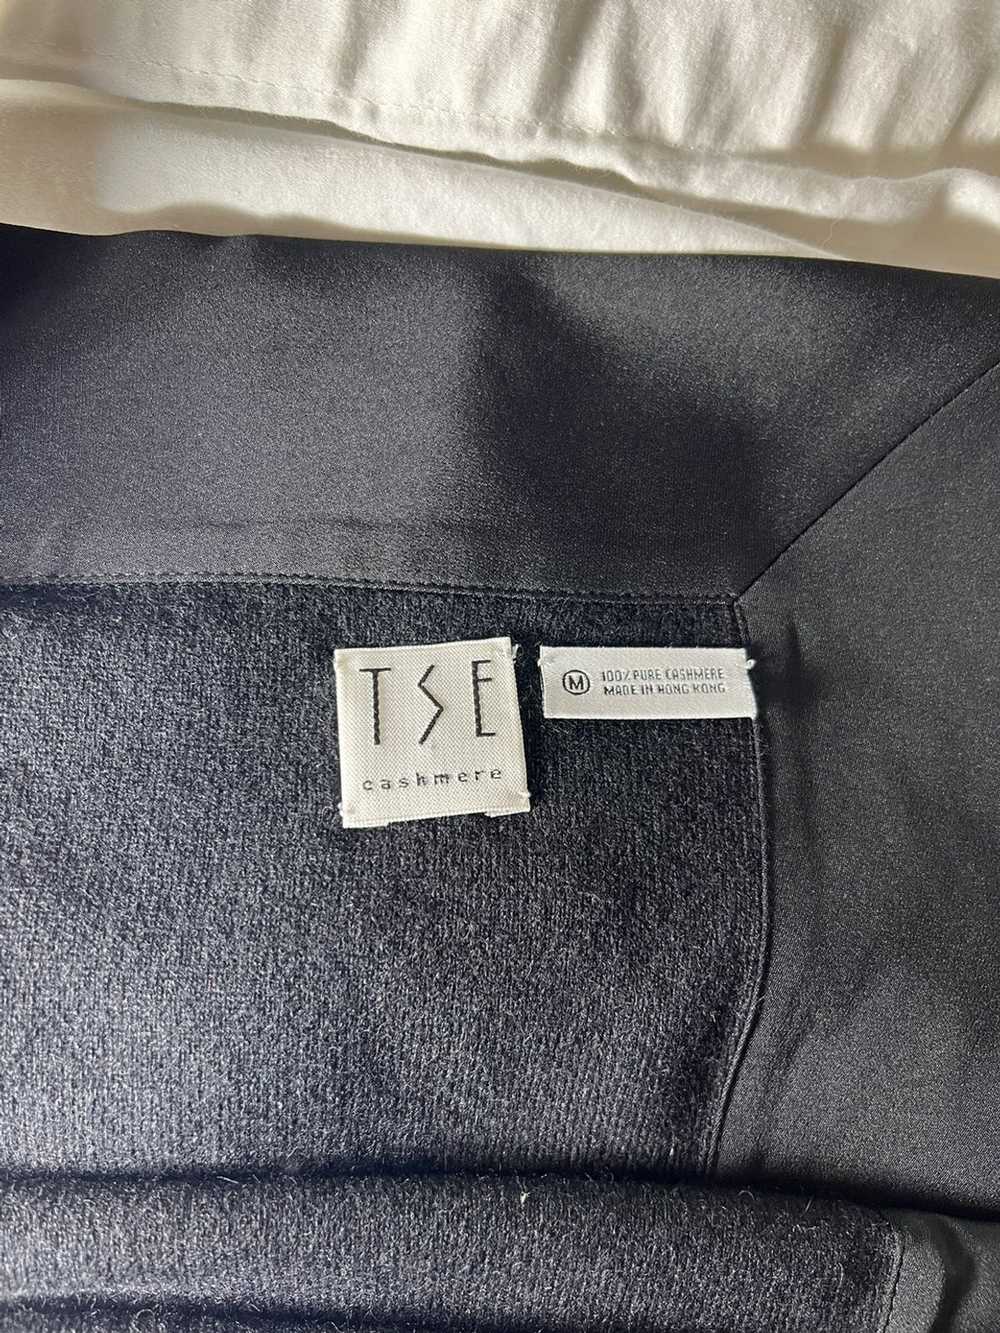 Tse TSE cashmere shawl - image 1